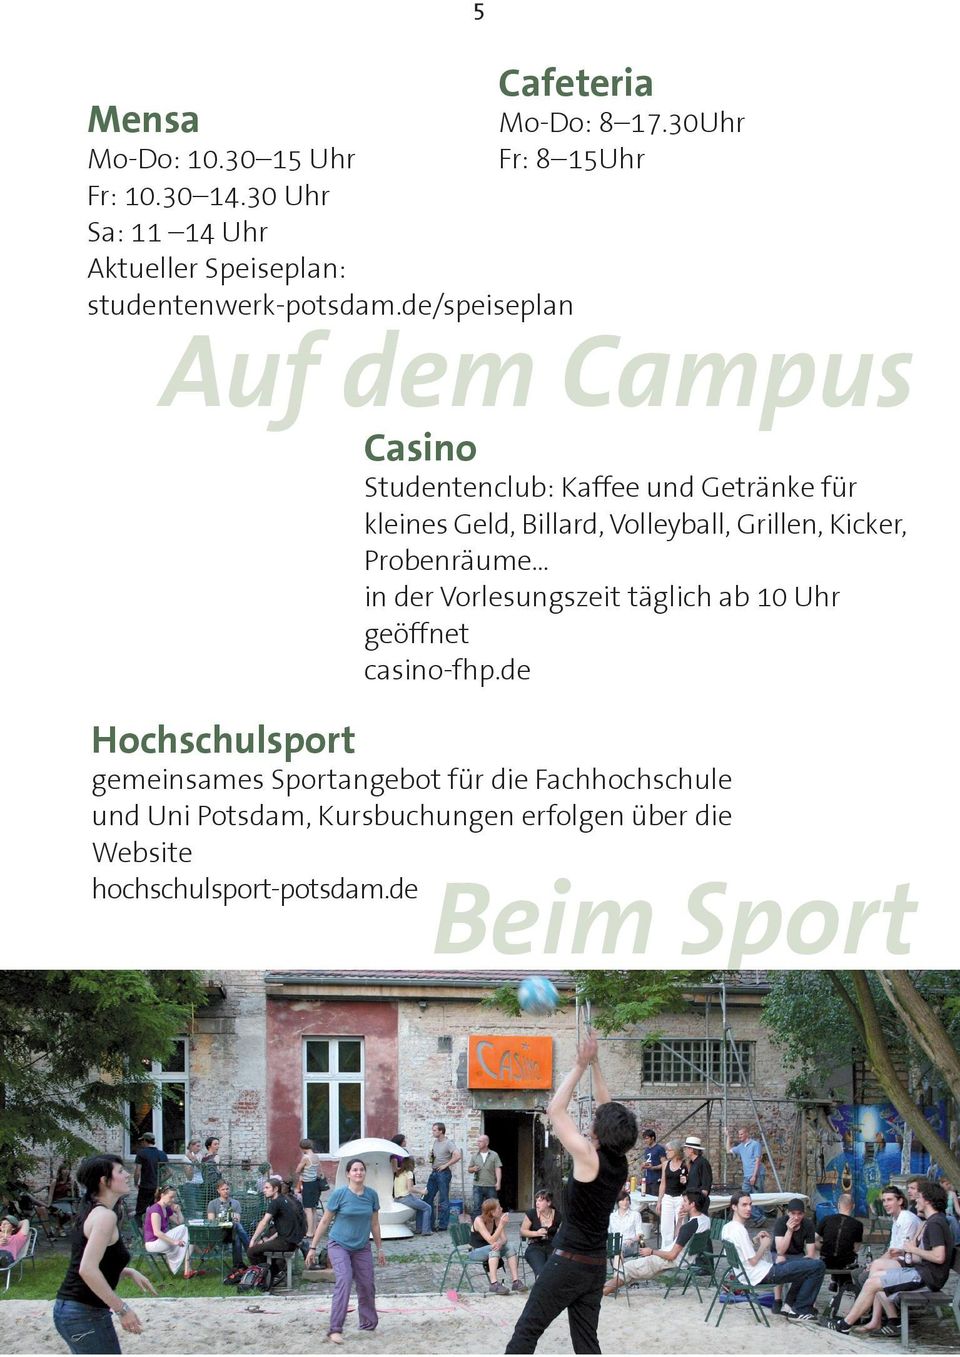 de/speiseplan Hochschulsport gemeinsames Sportangebot für die Fachhochschule und Uni Potsdam, Kursbuchungen erfolgen über die